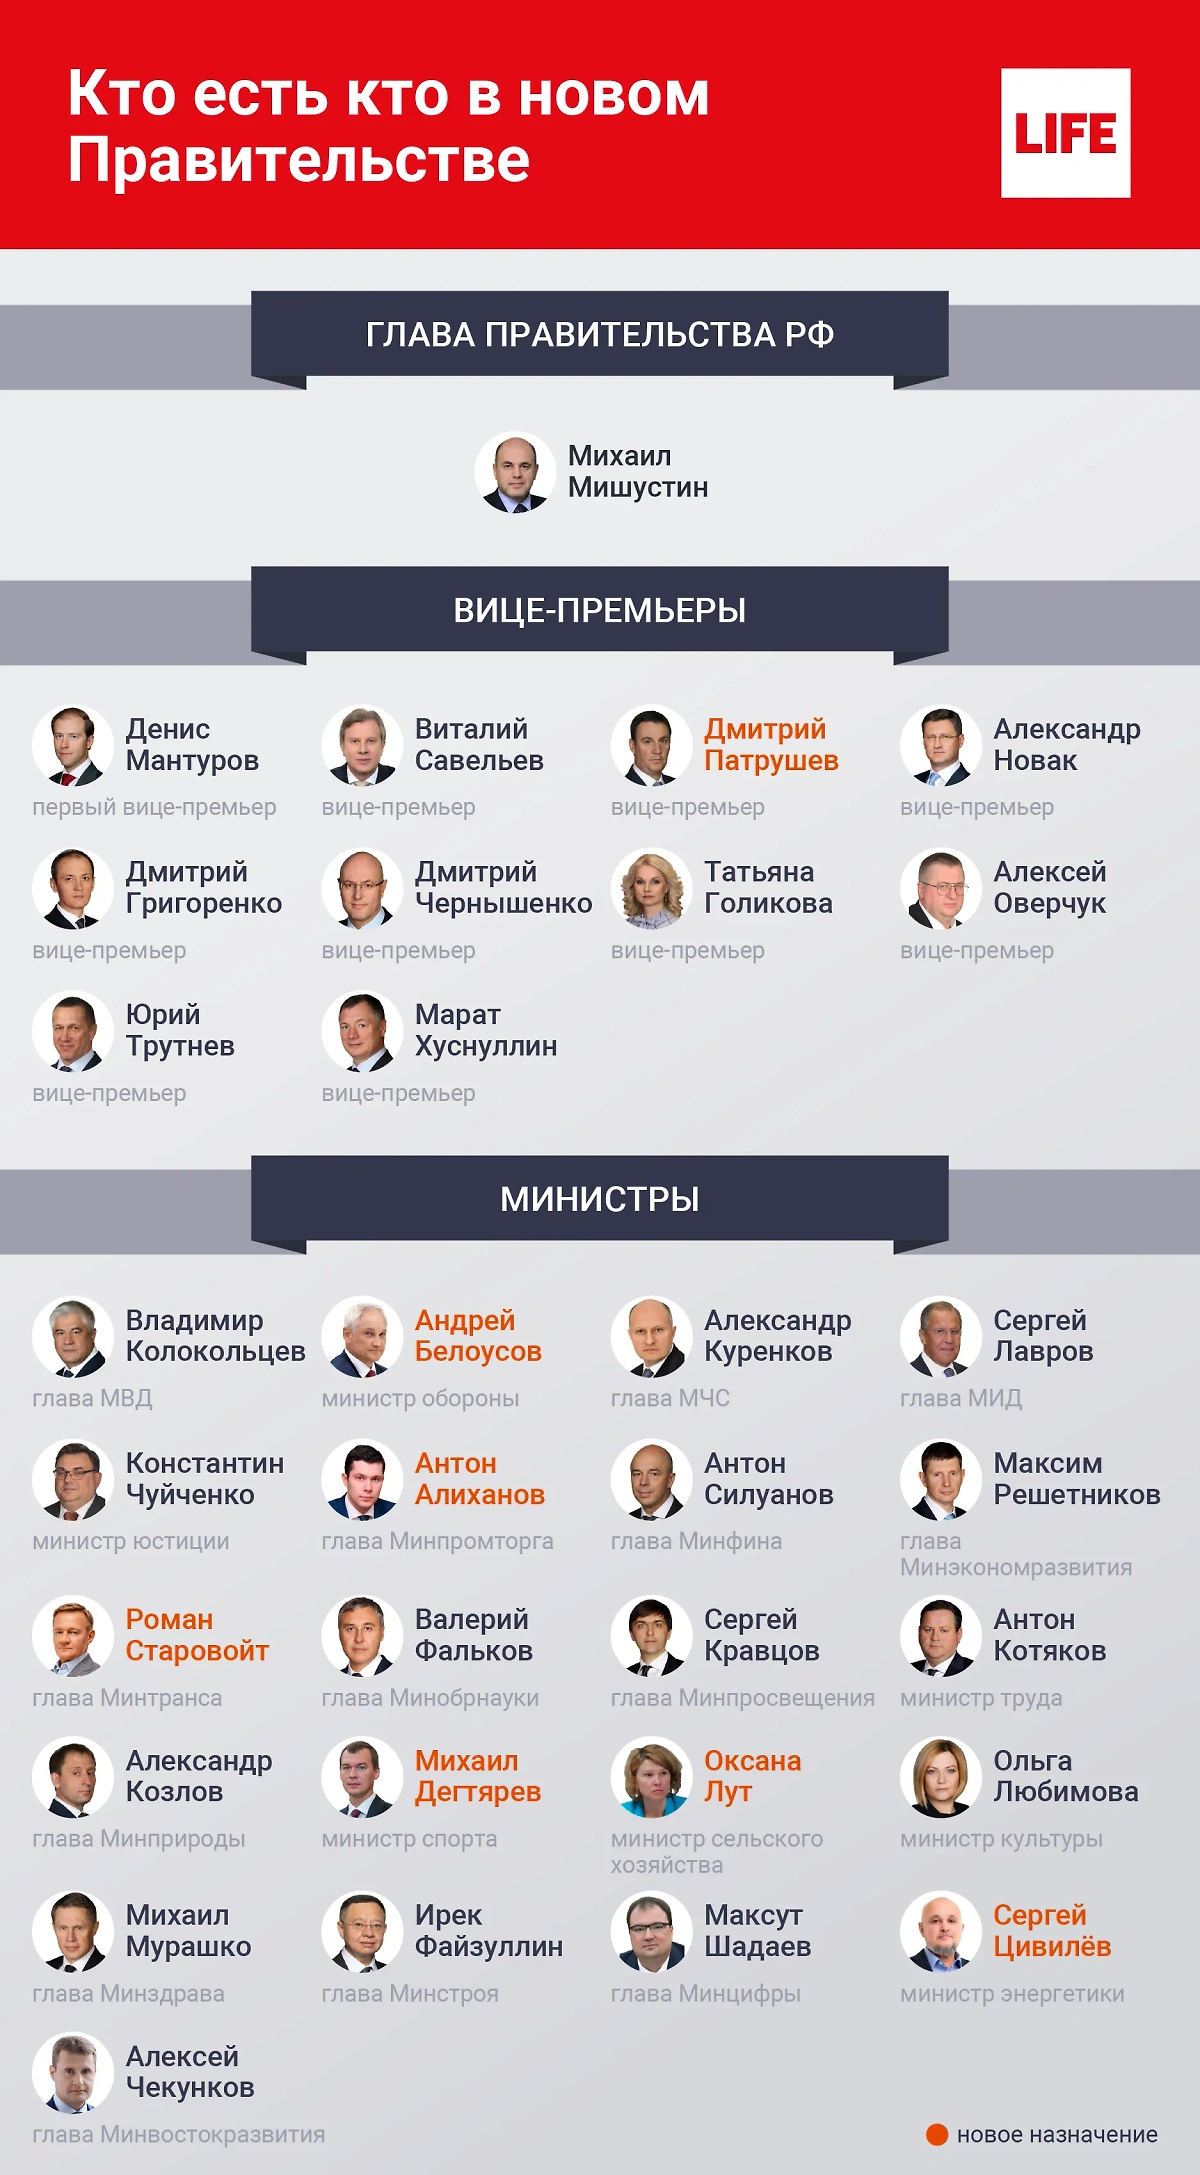 Состав нового Правительства РФ. Инфографика © Life.ru